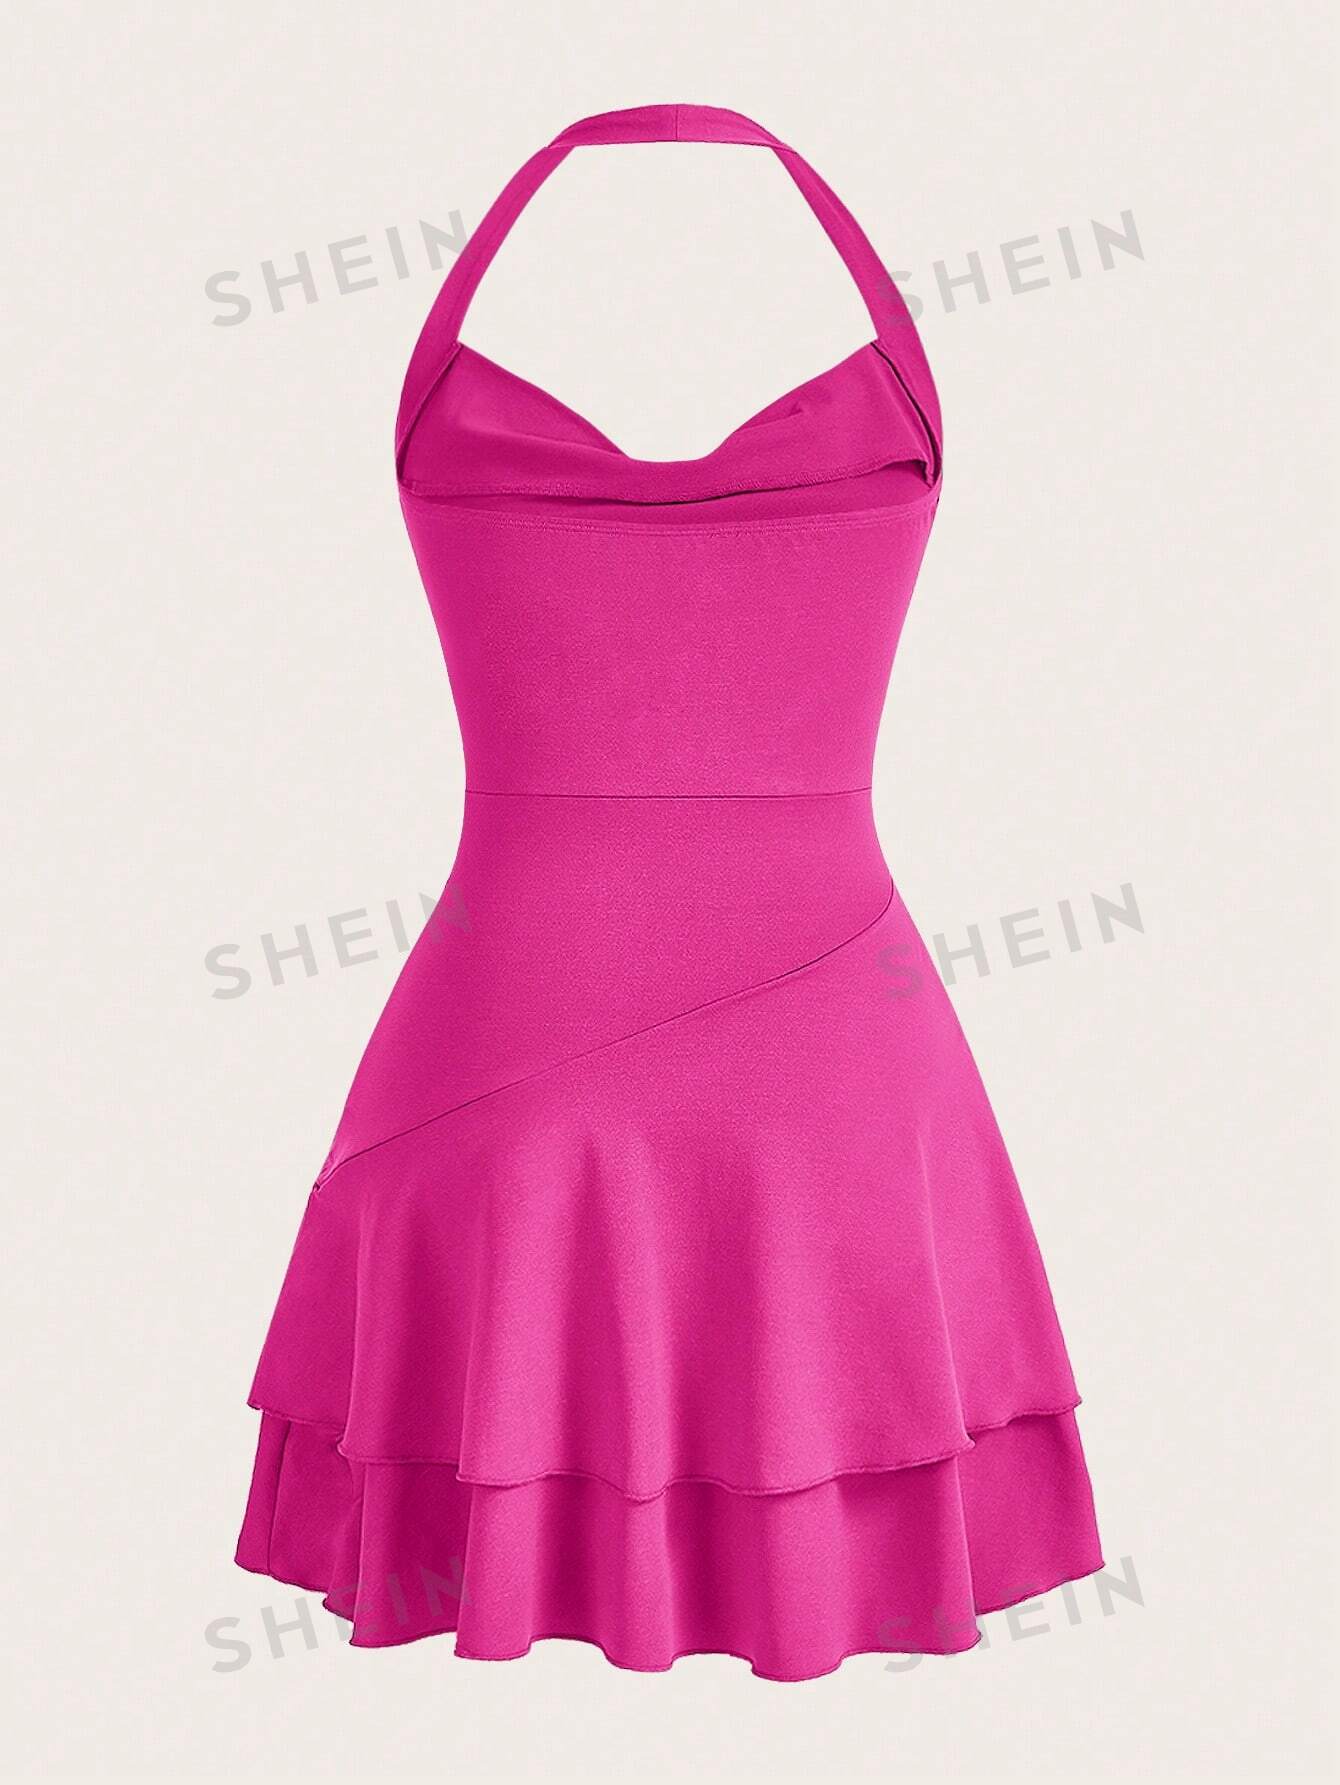 SHEIN MOD однотонное женское платье с бретелькой на шее и многослойным подолом, ярко-розовый фото